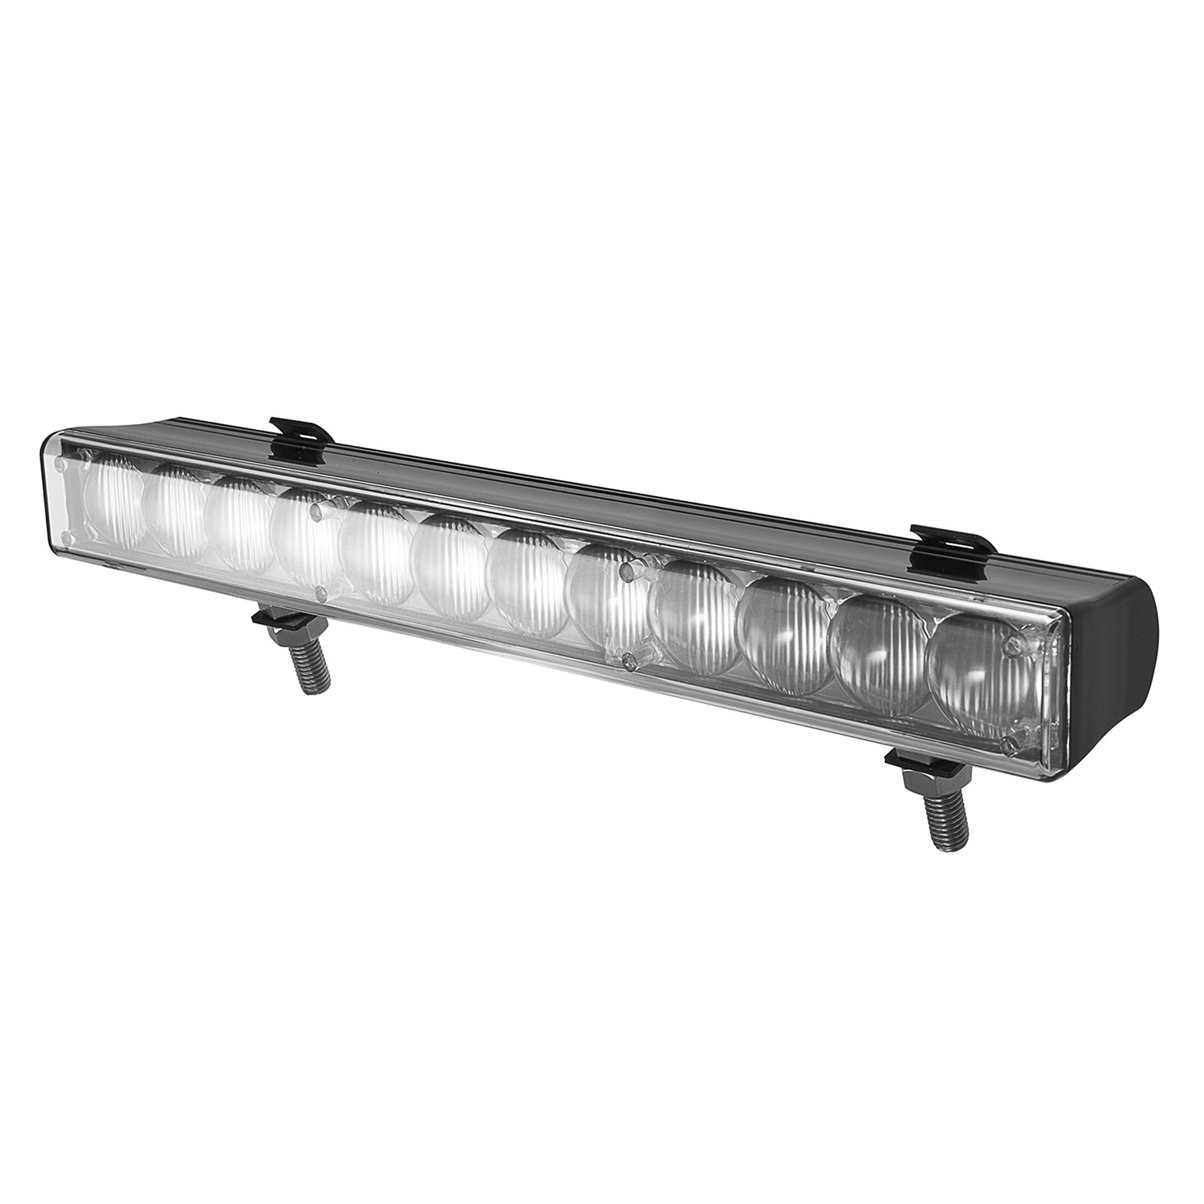 55mm x 350mm Rectangular LED Light Bar